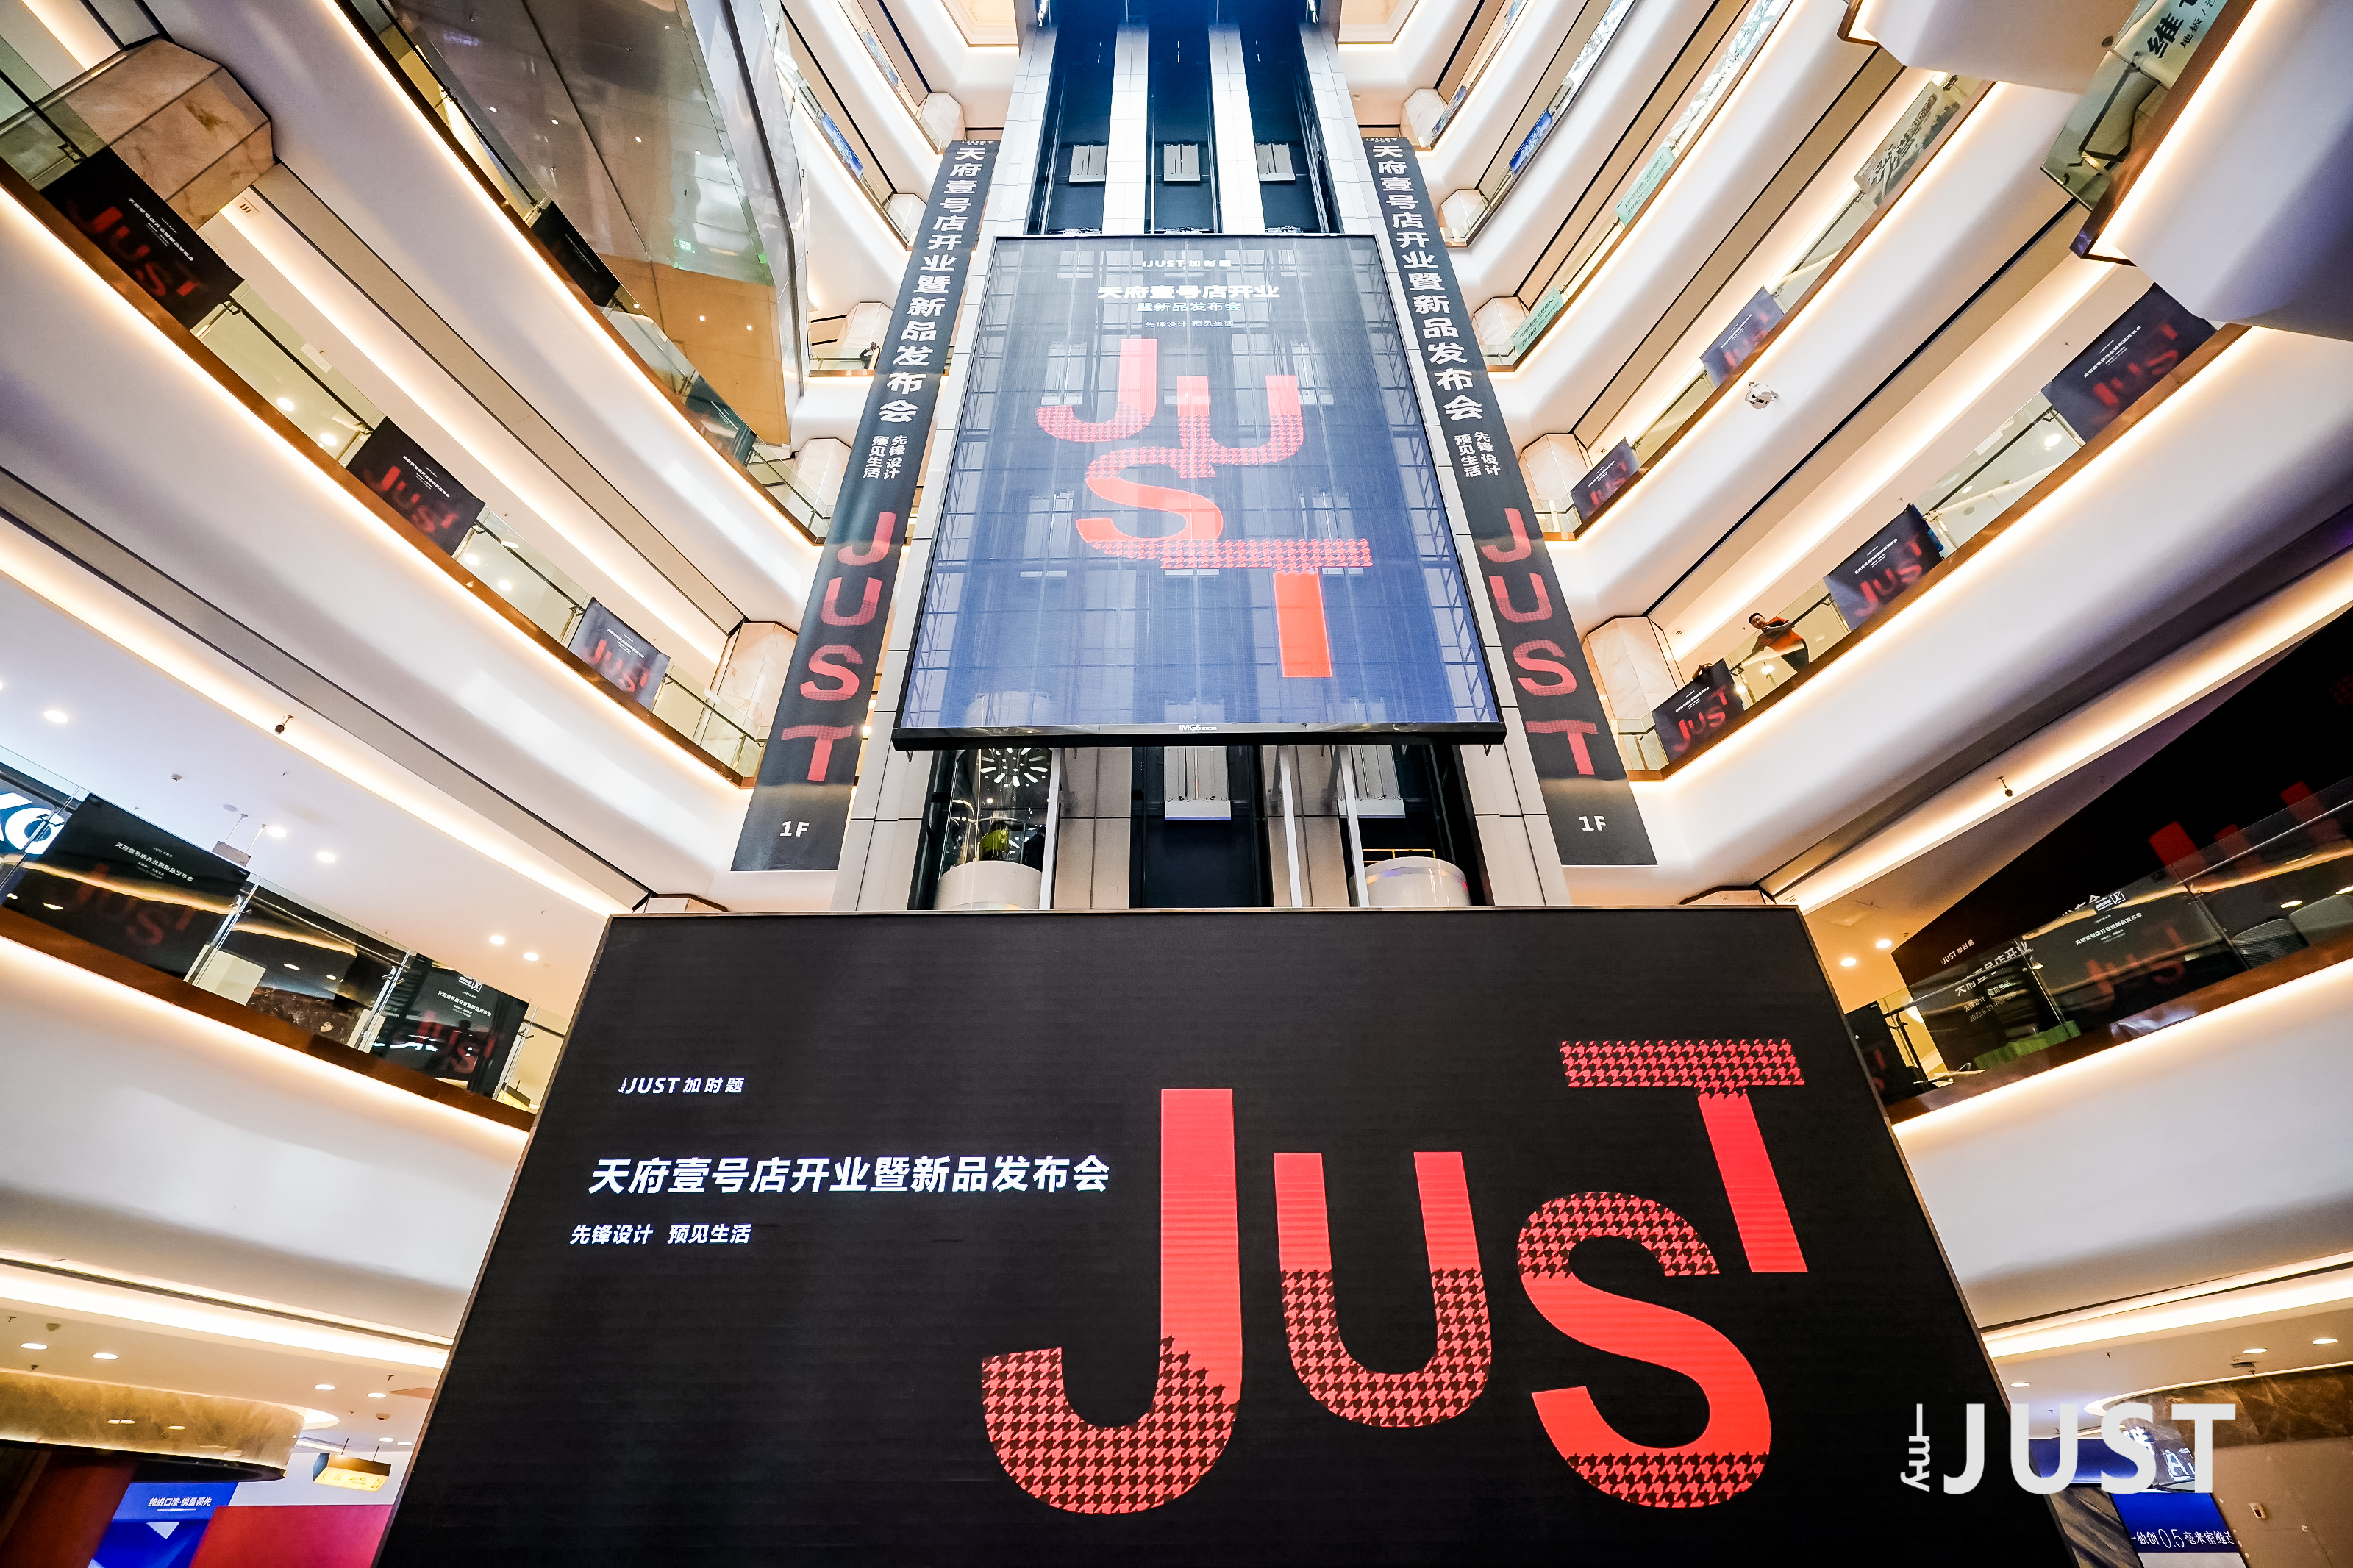 红星美凯龙四川全球家居1号店迎来原创设计品牌MYJUST的西南旗舰店开业以及新品发布。